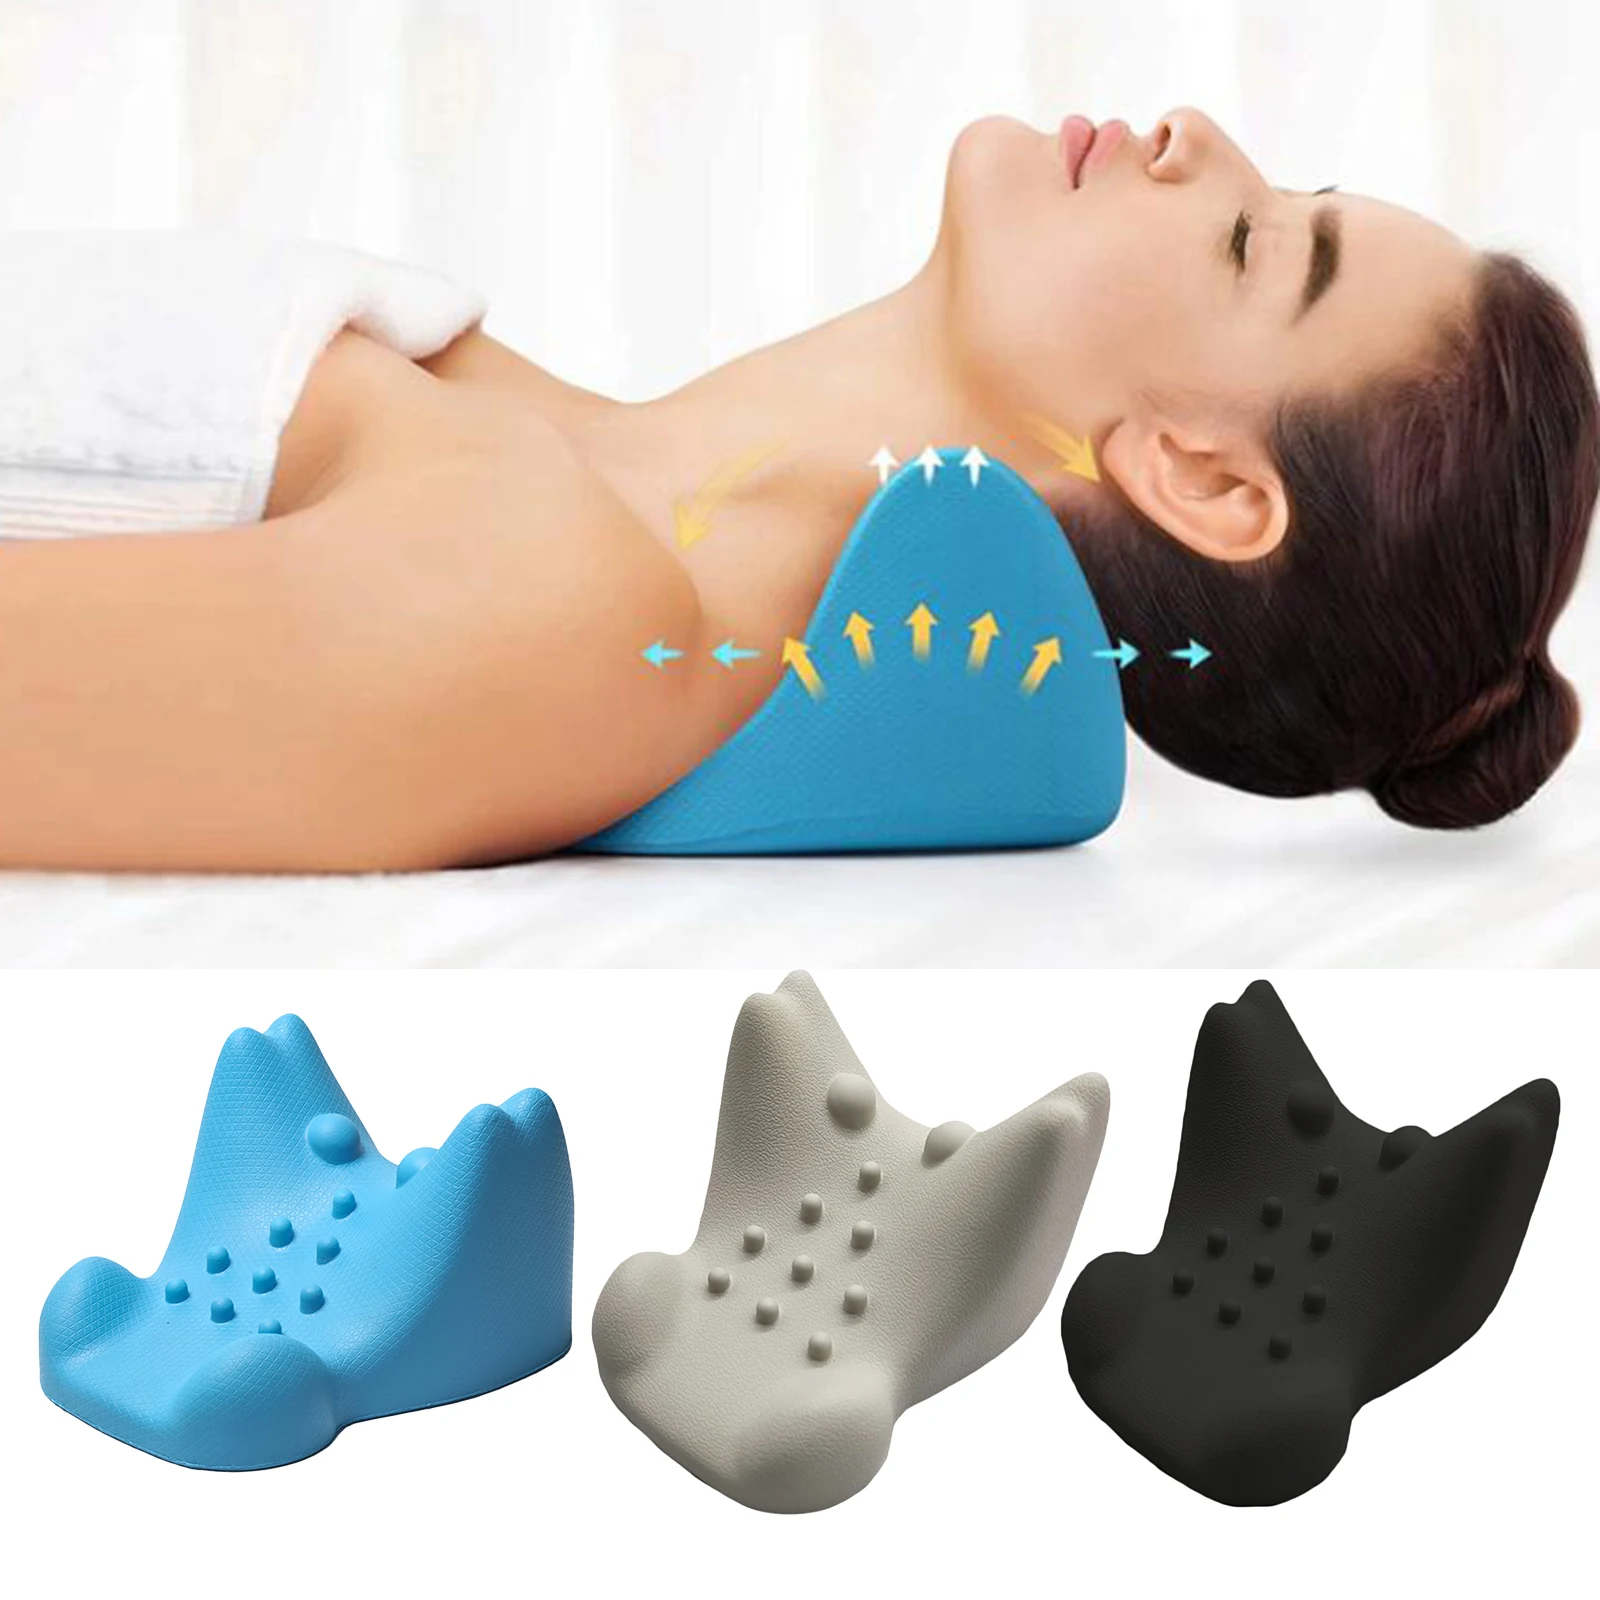 

Релаксатор для шеи и плеч, хиропрактика, подушка с массажным носиком для шеи, для расслабления мышц, быстрая, эффективная, легкая